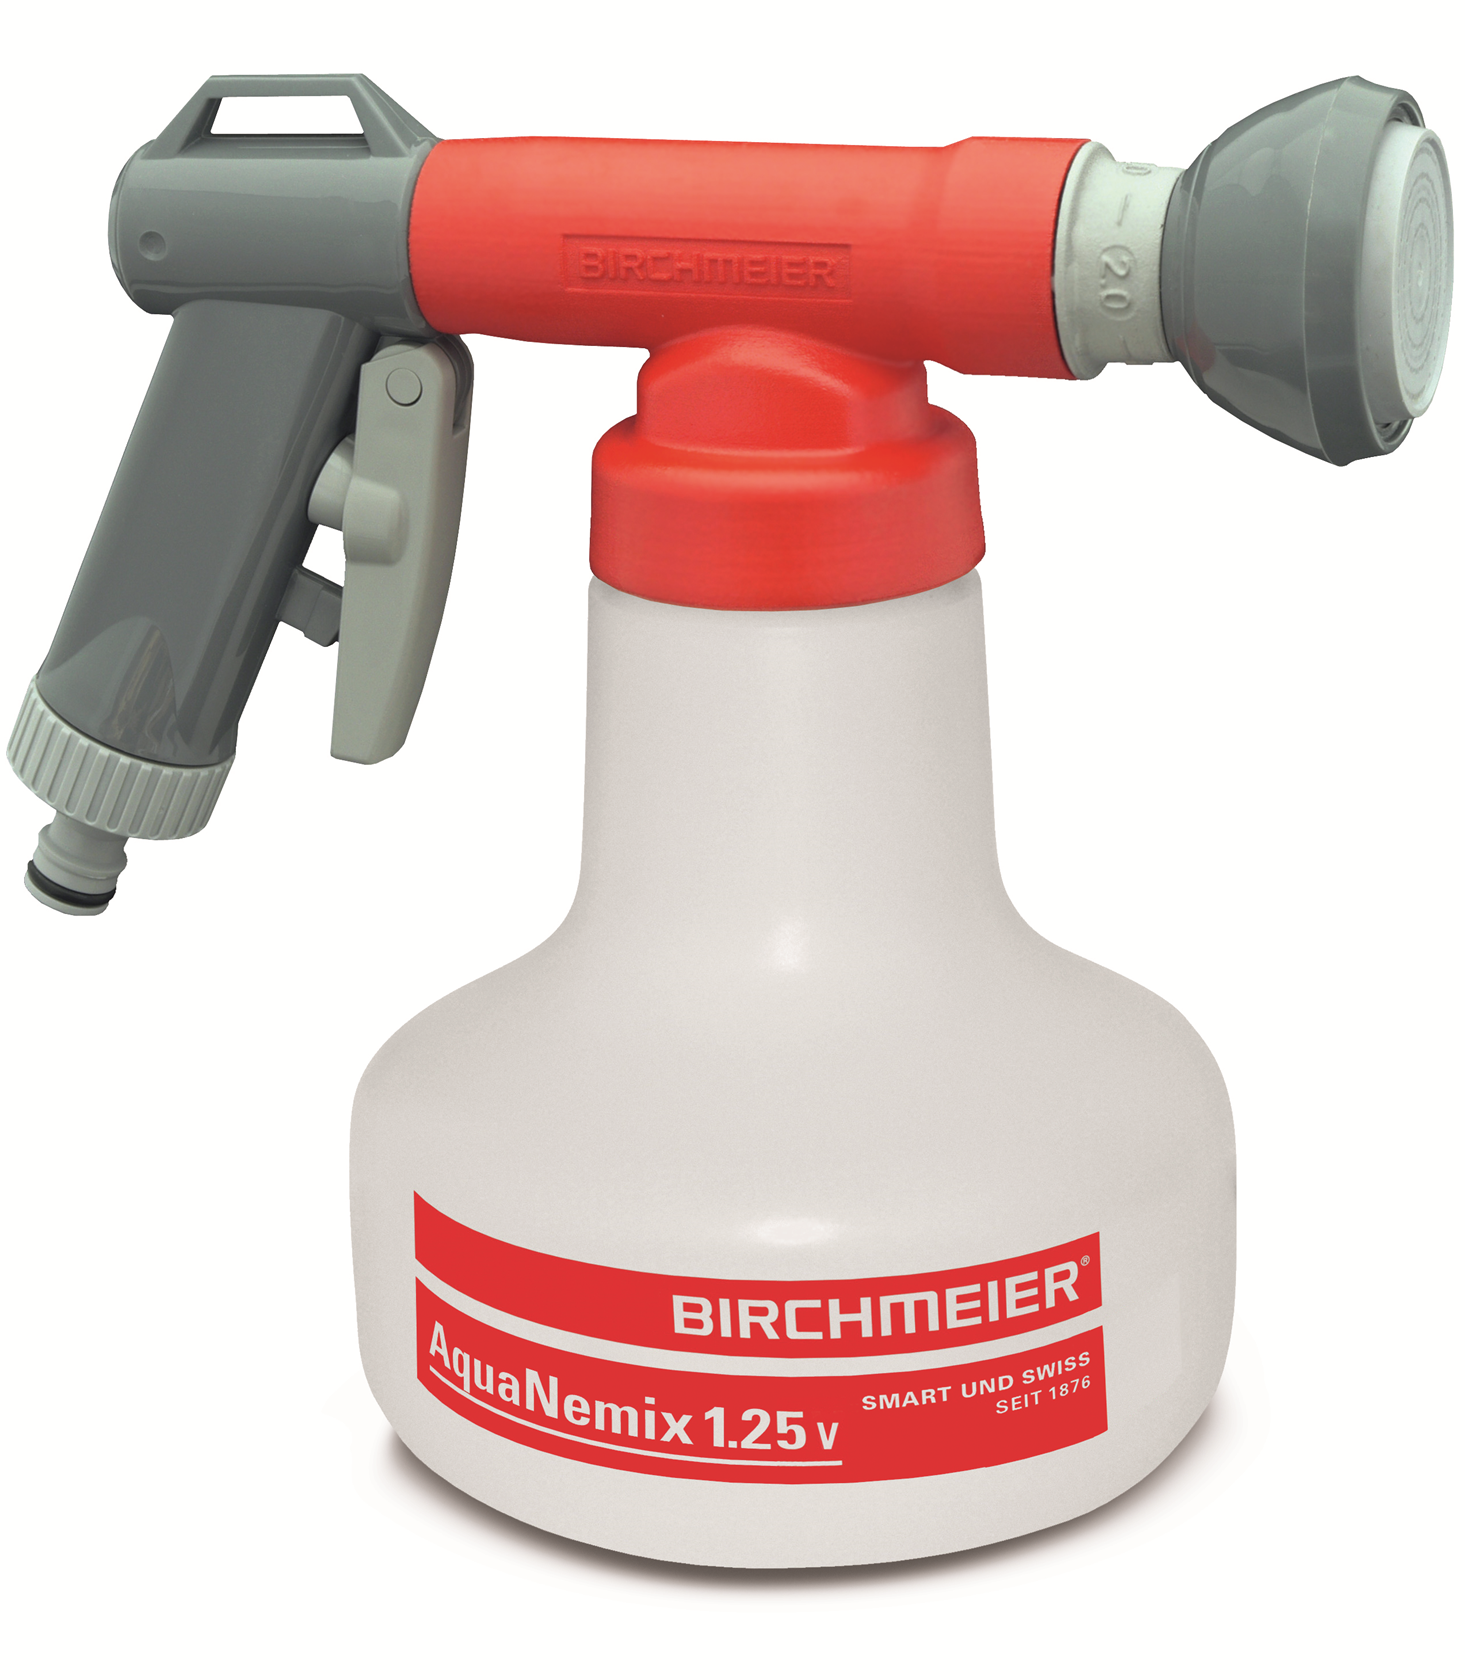 Birchmeier 'Aquanemix 1.25V' mengtoestel - voor nematoden of aaltjes